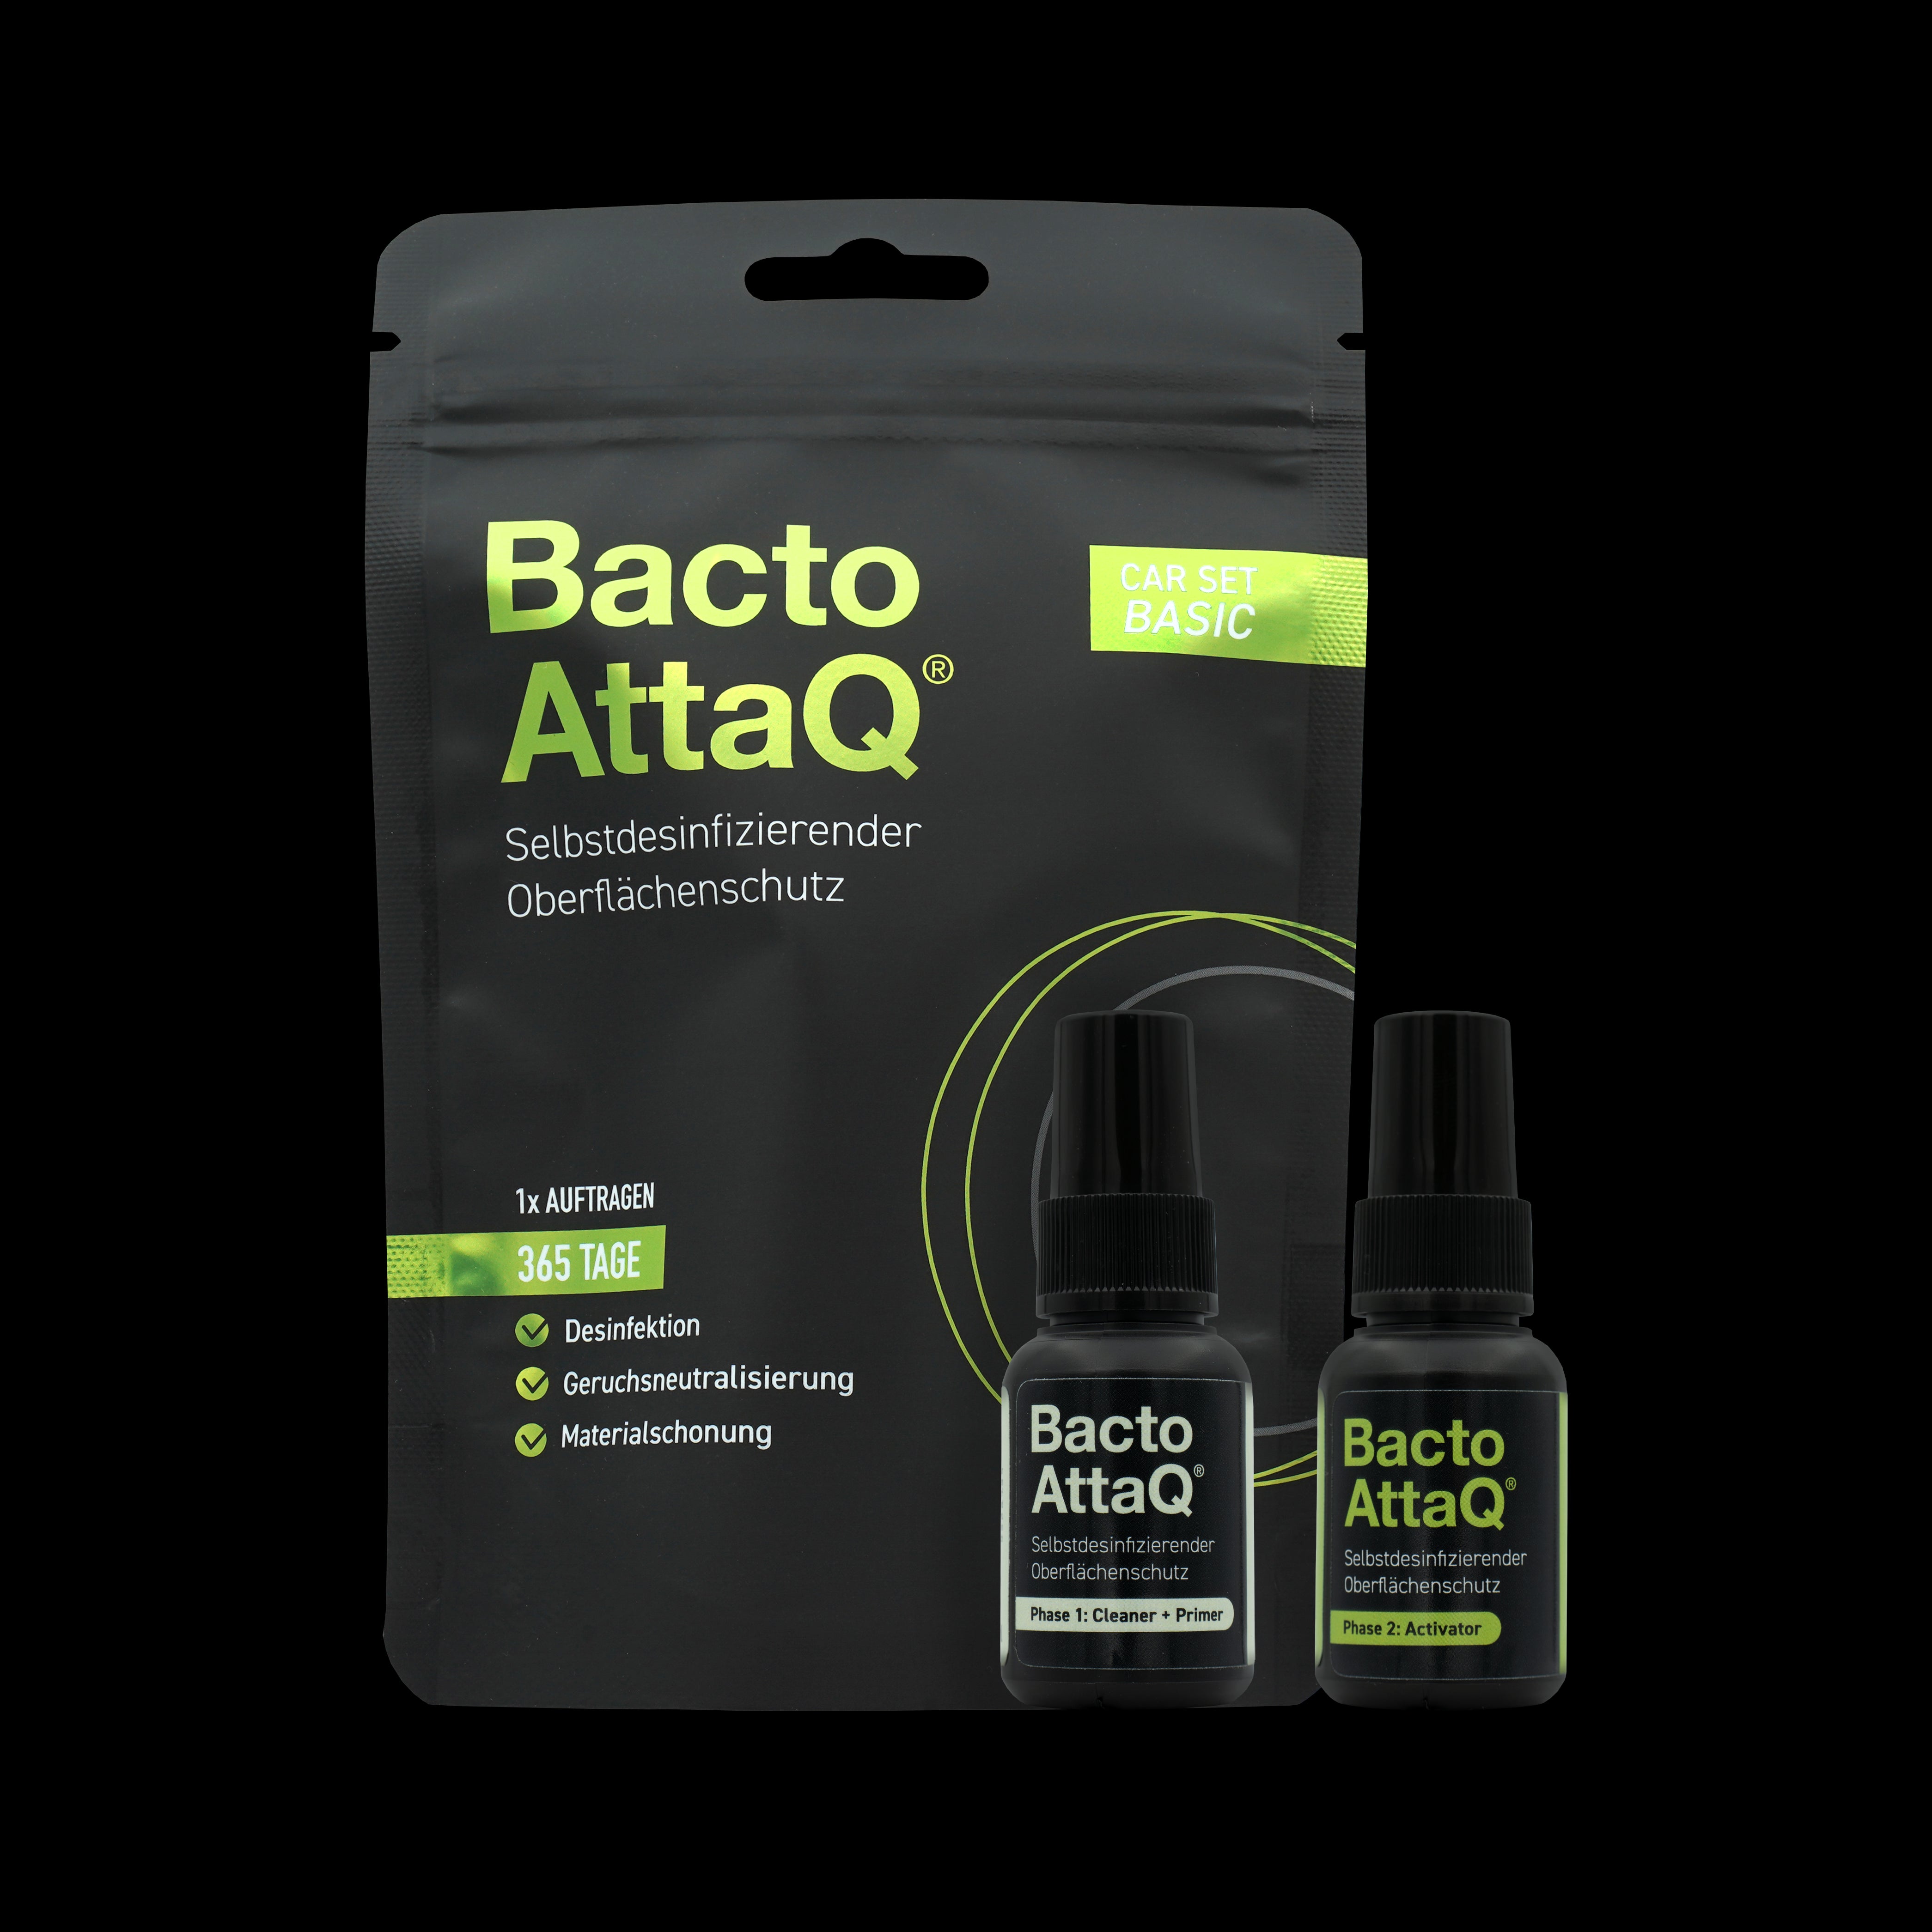 BactoAttaQ Самодезинфекцираща се защита на повърхности